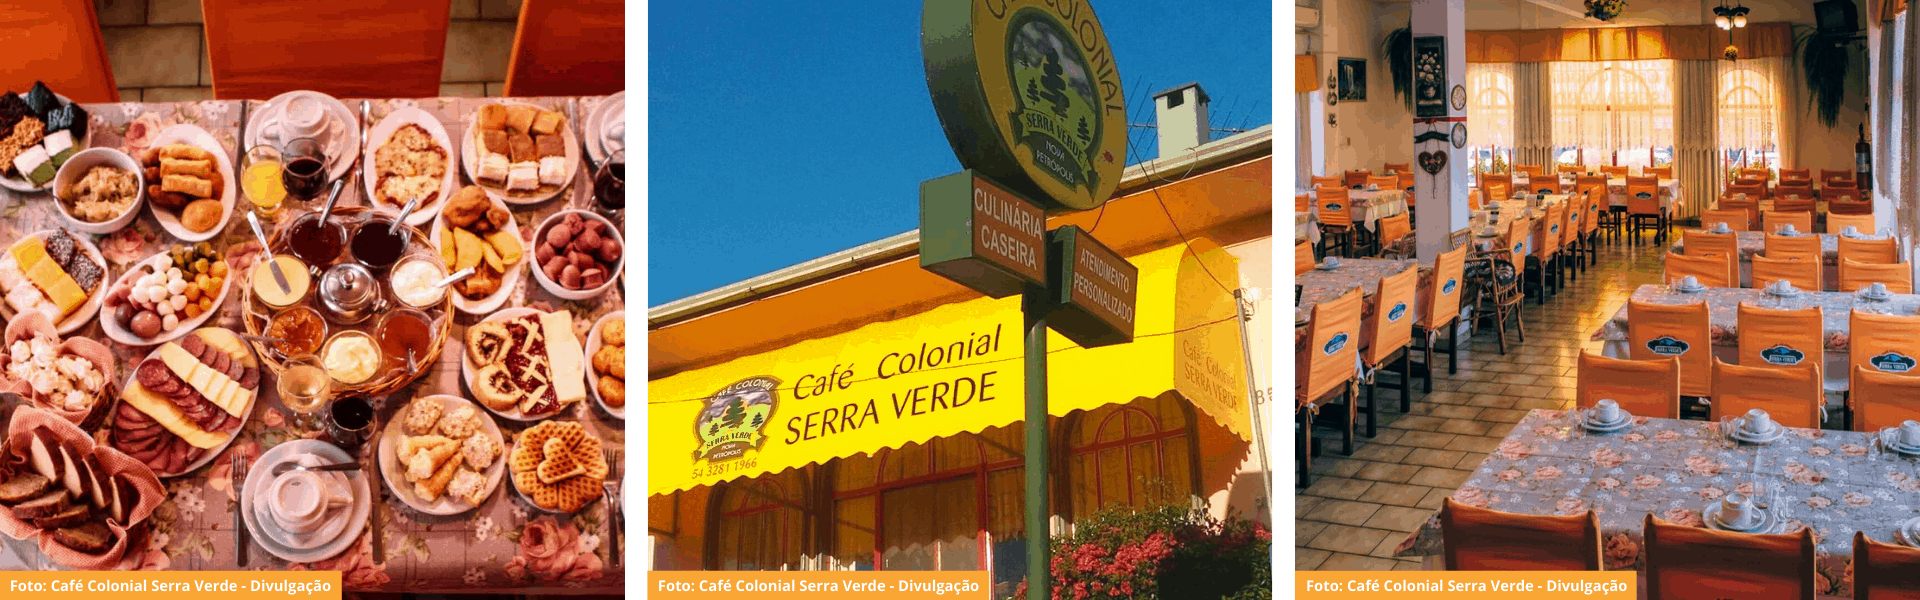 Fotos Café Colonial Serra Verde